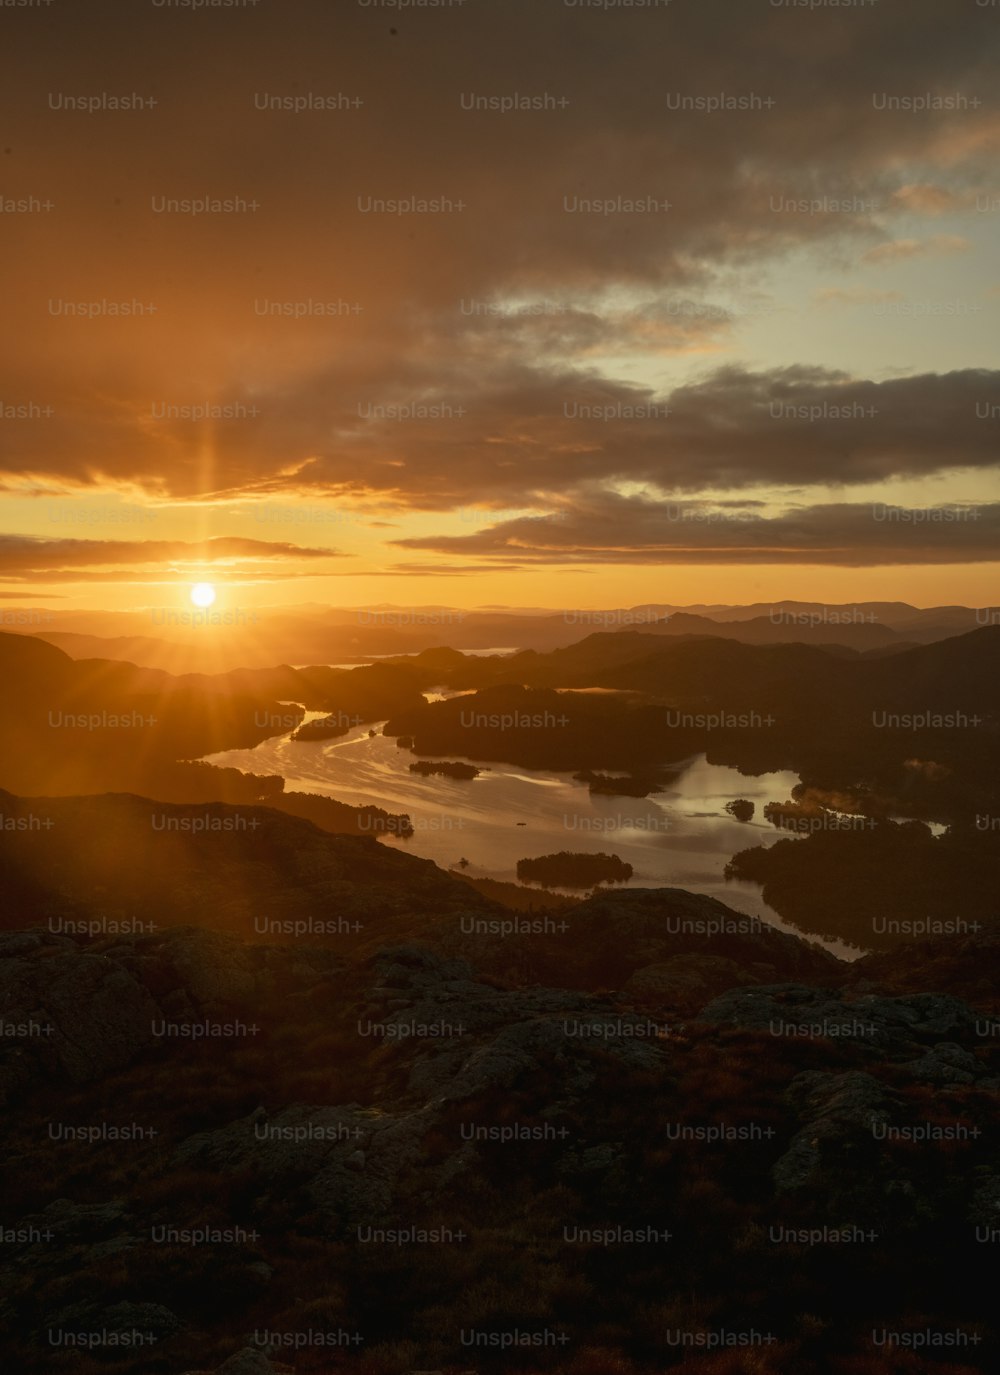 Il sole sta tramontando su un lago in montagna